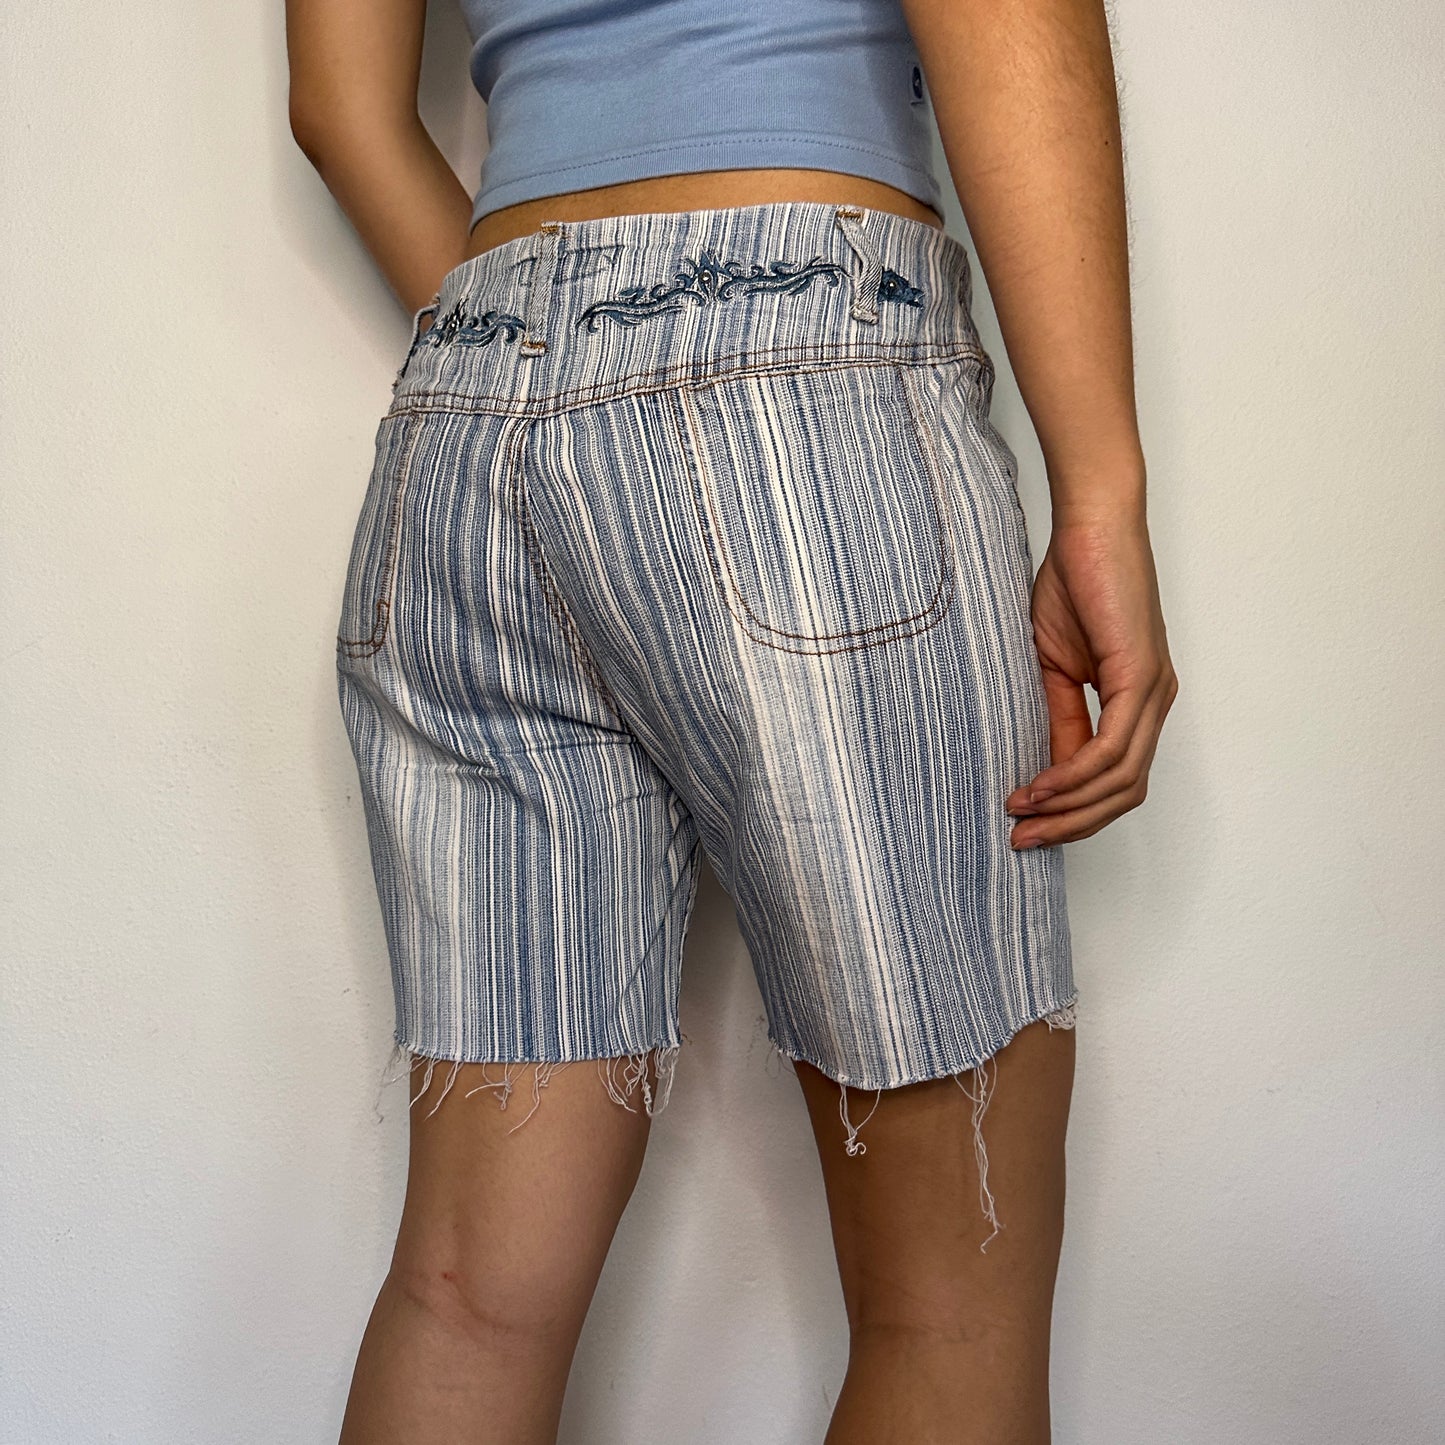 00s Striped Denim Cut Off Shorts